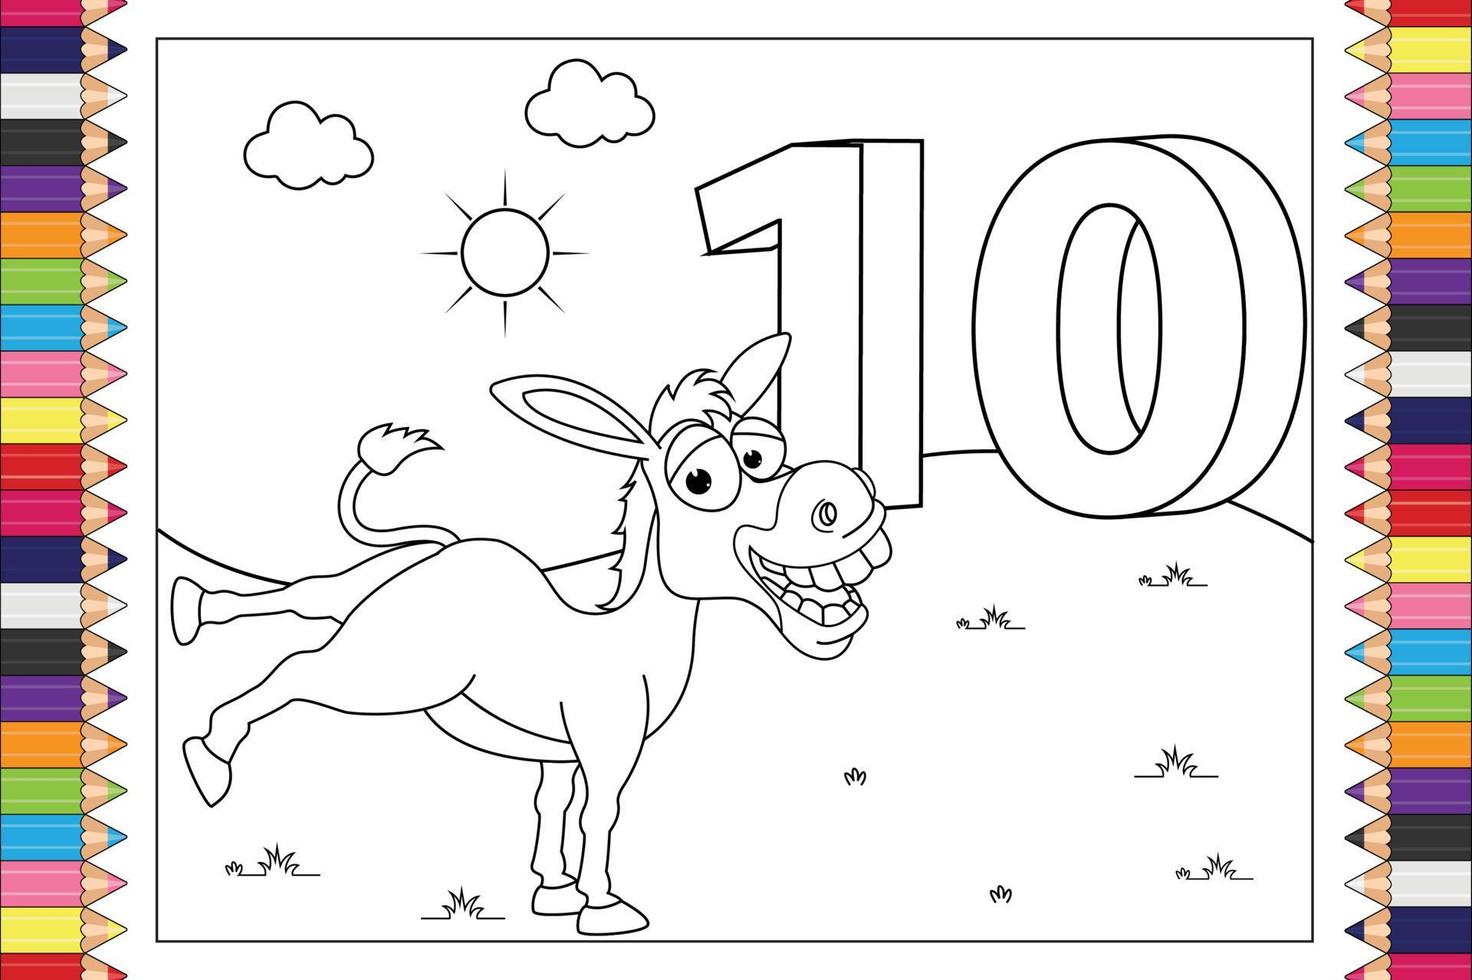 colorir desenho animado de animais com número para crianças vetor